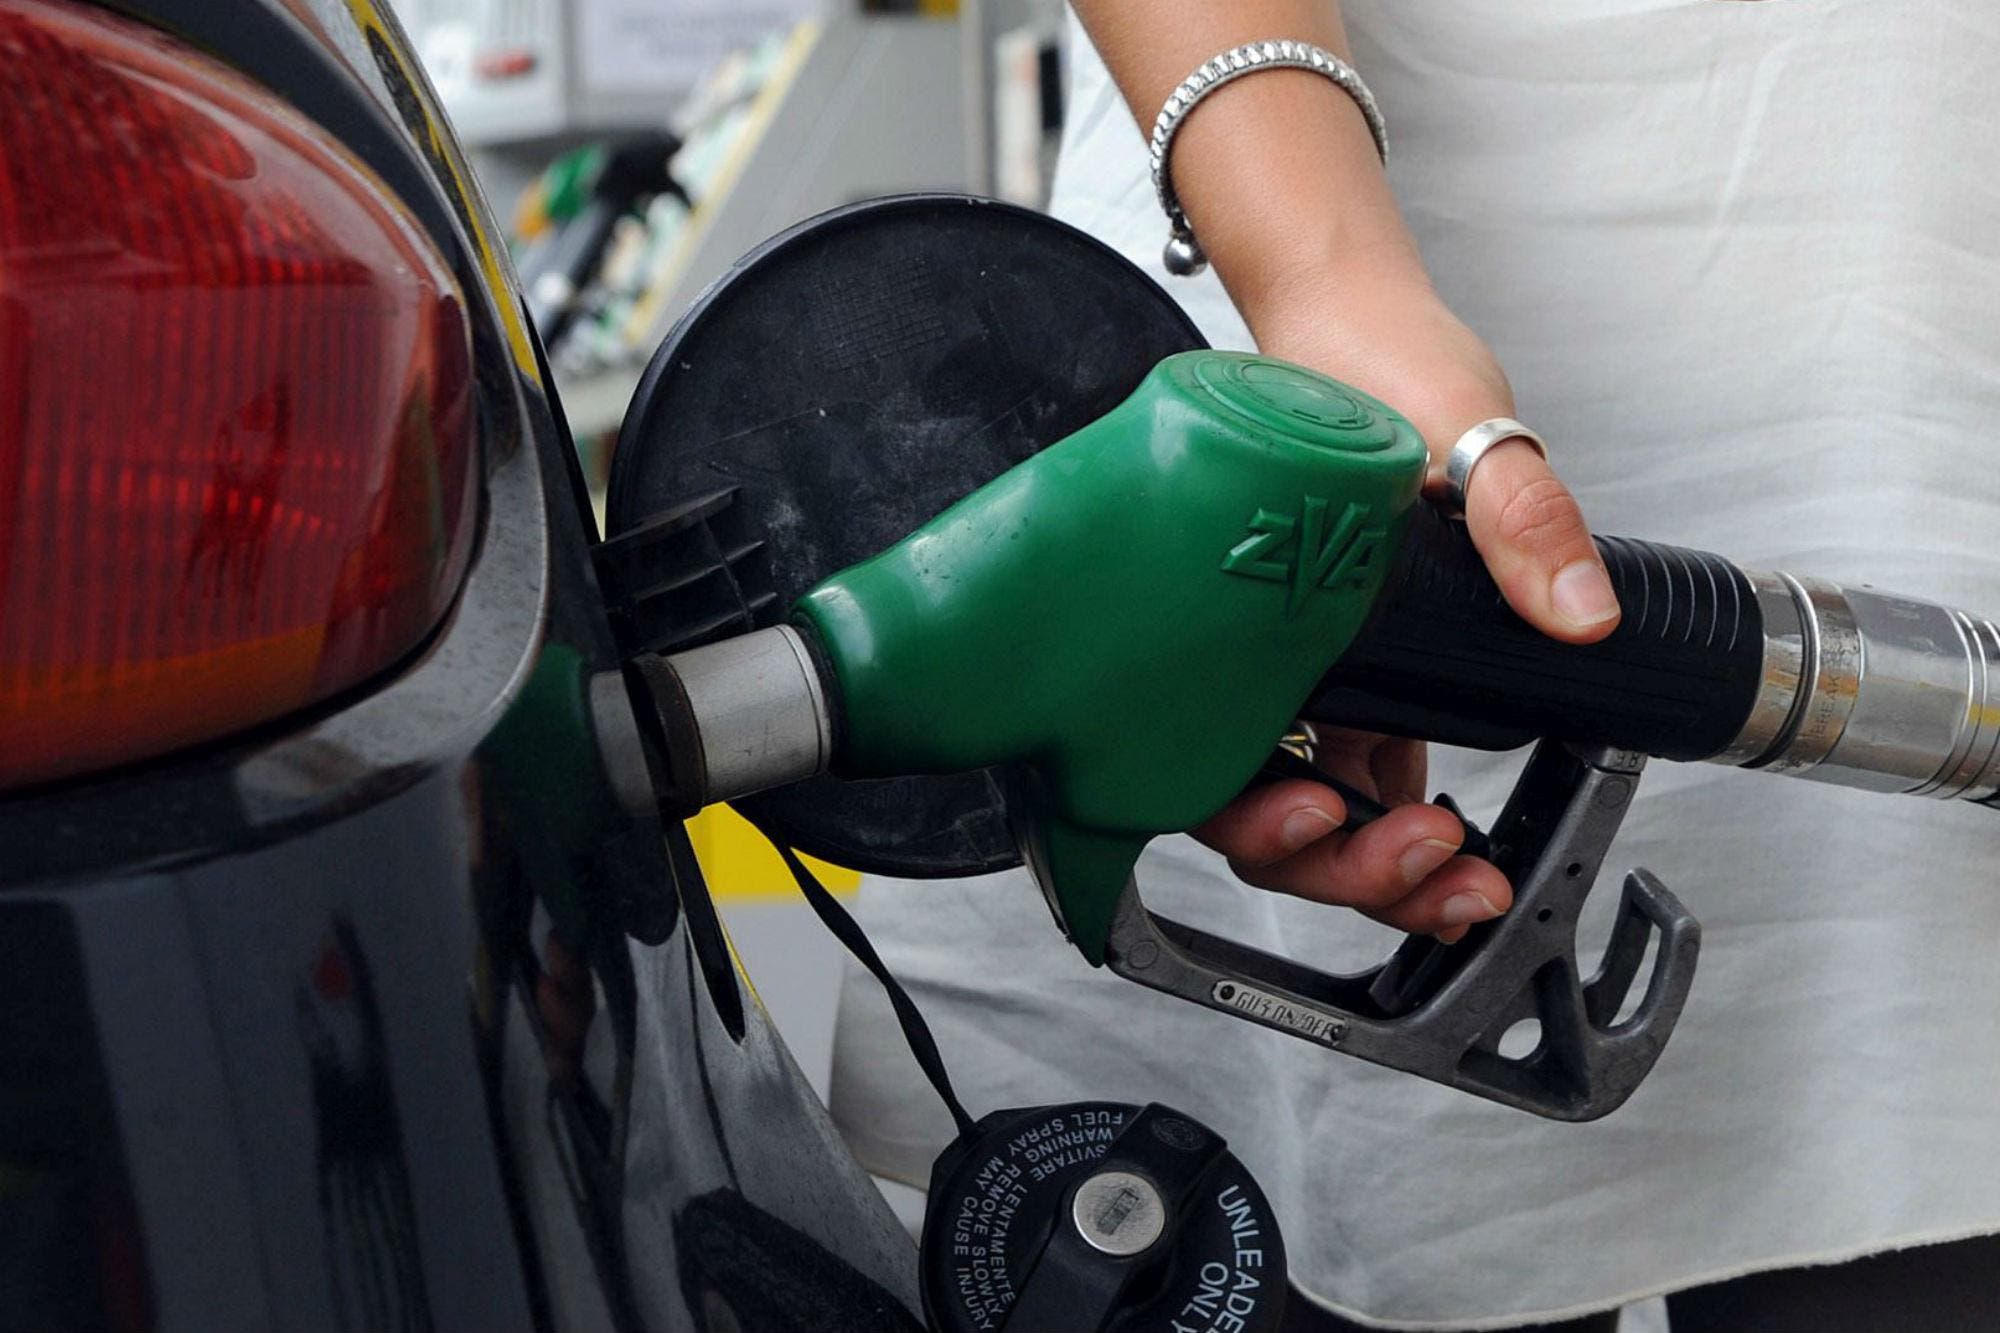 Combustibles caros: una propuesta para topar el precio y extender la reducción de las tasas tributarias